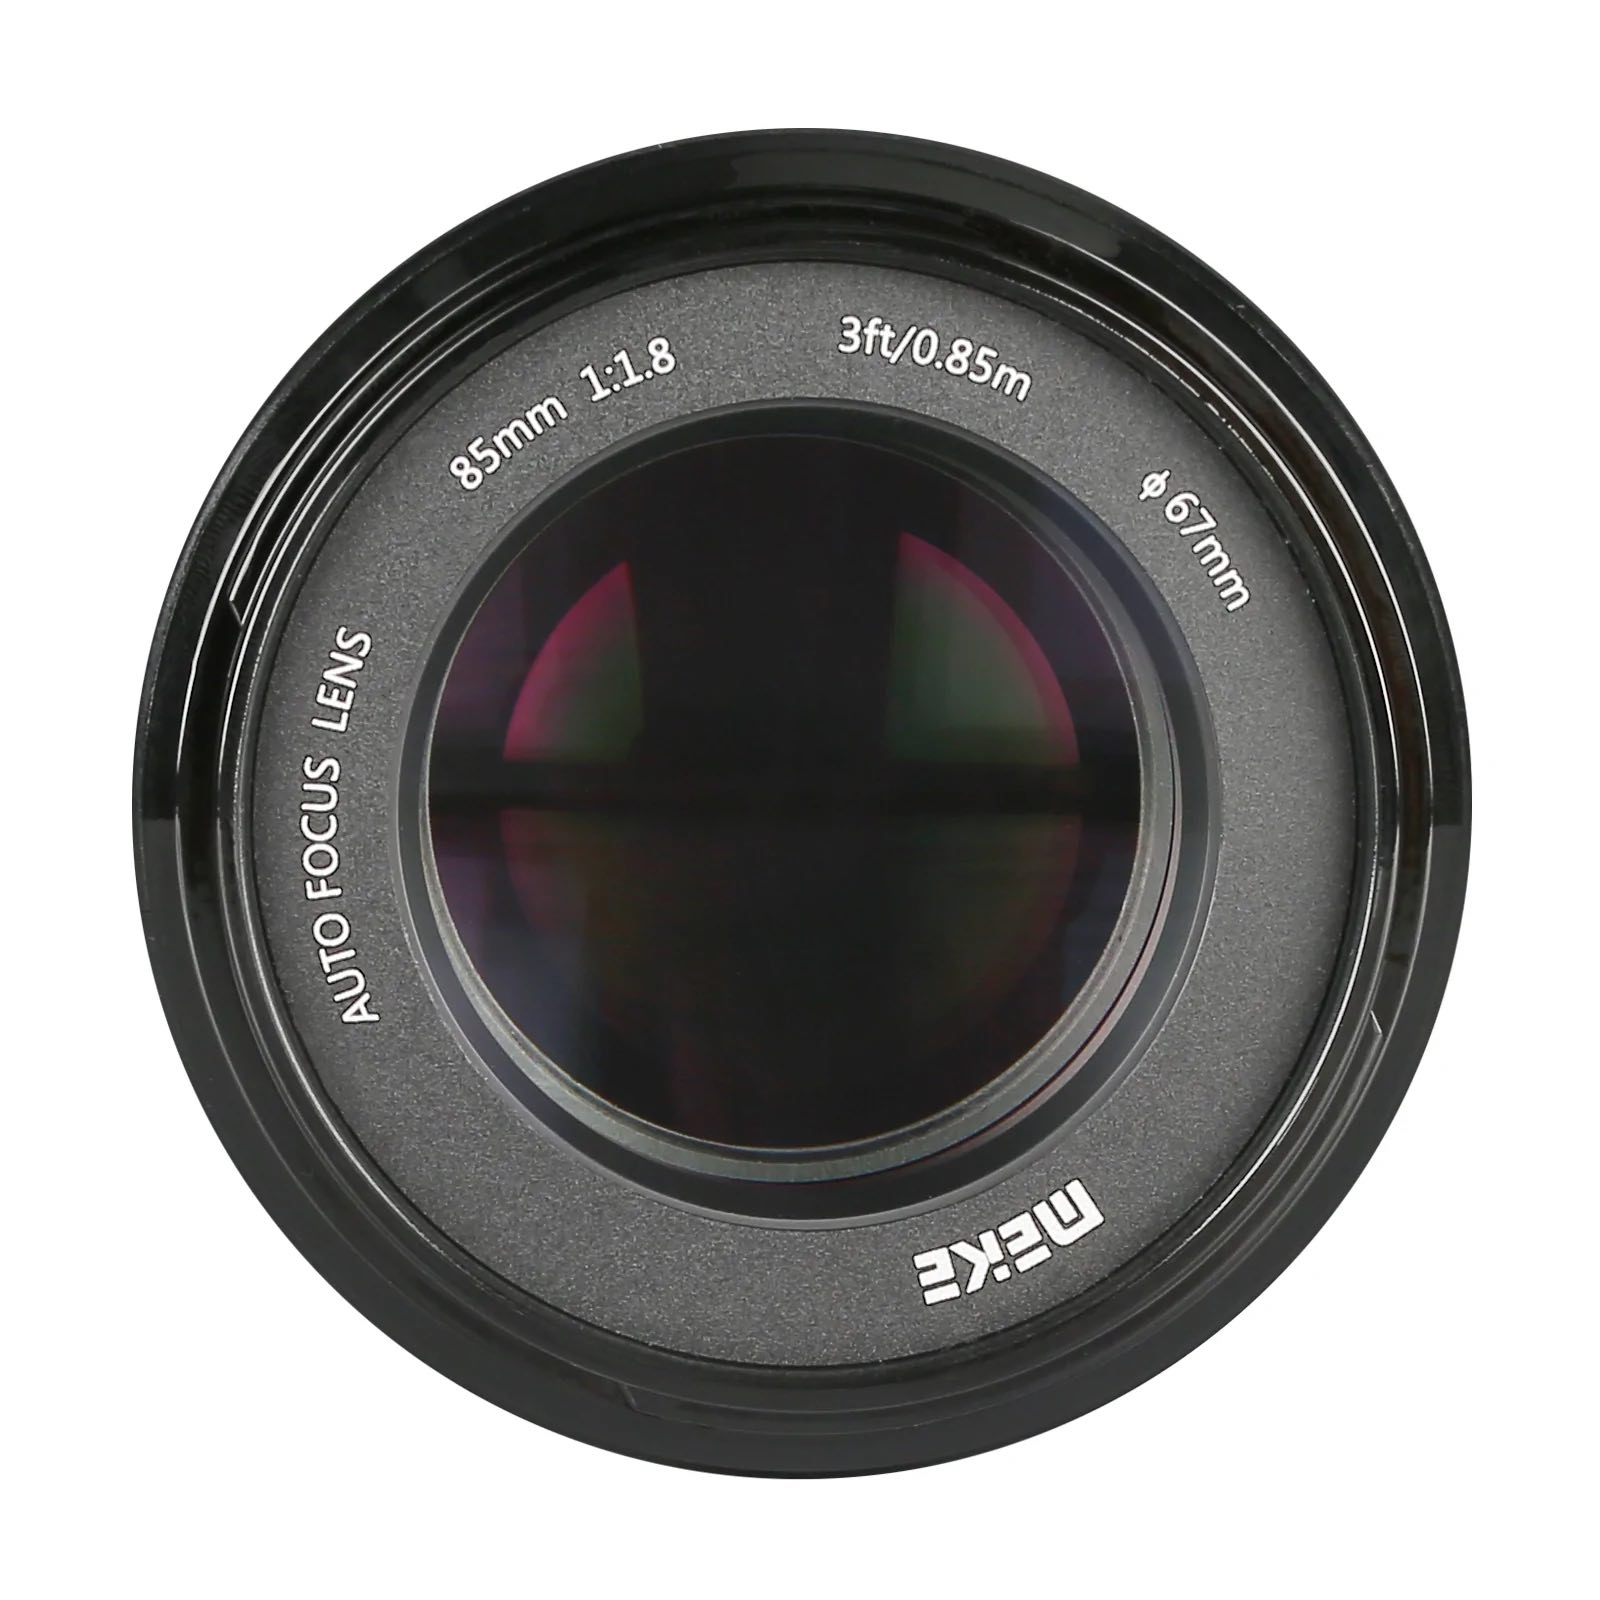 Another cheap new lens: Meike 85mm f/1.8 AF STM full-frame lens 